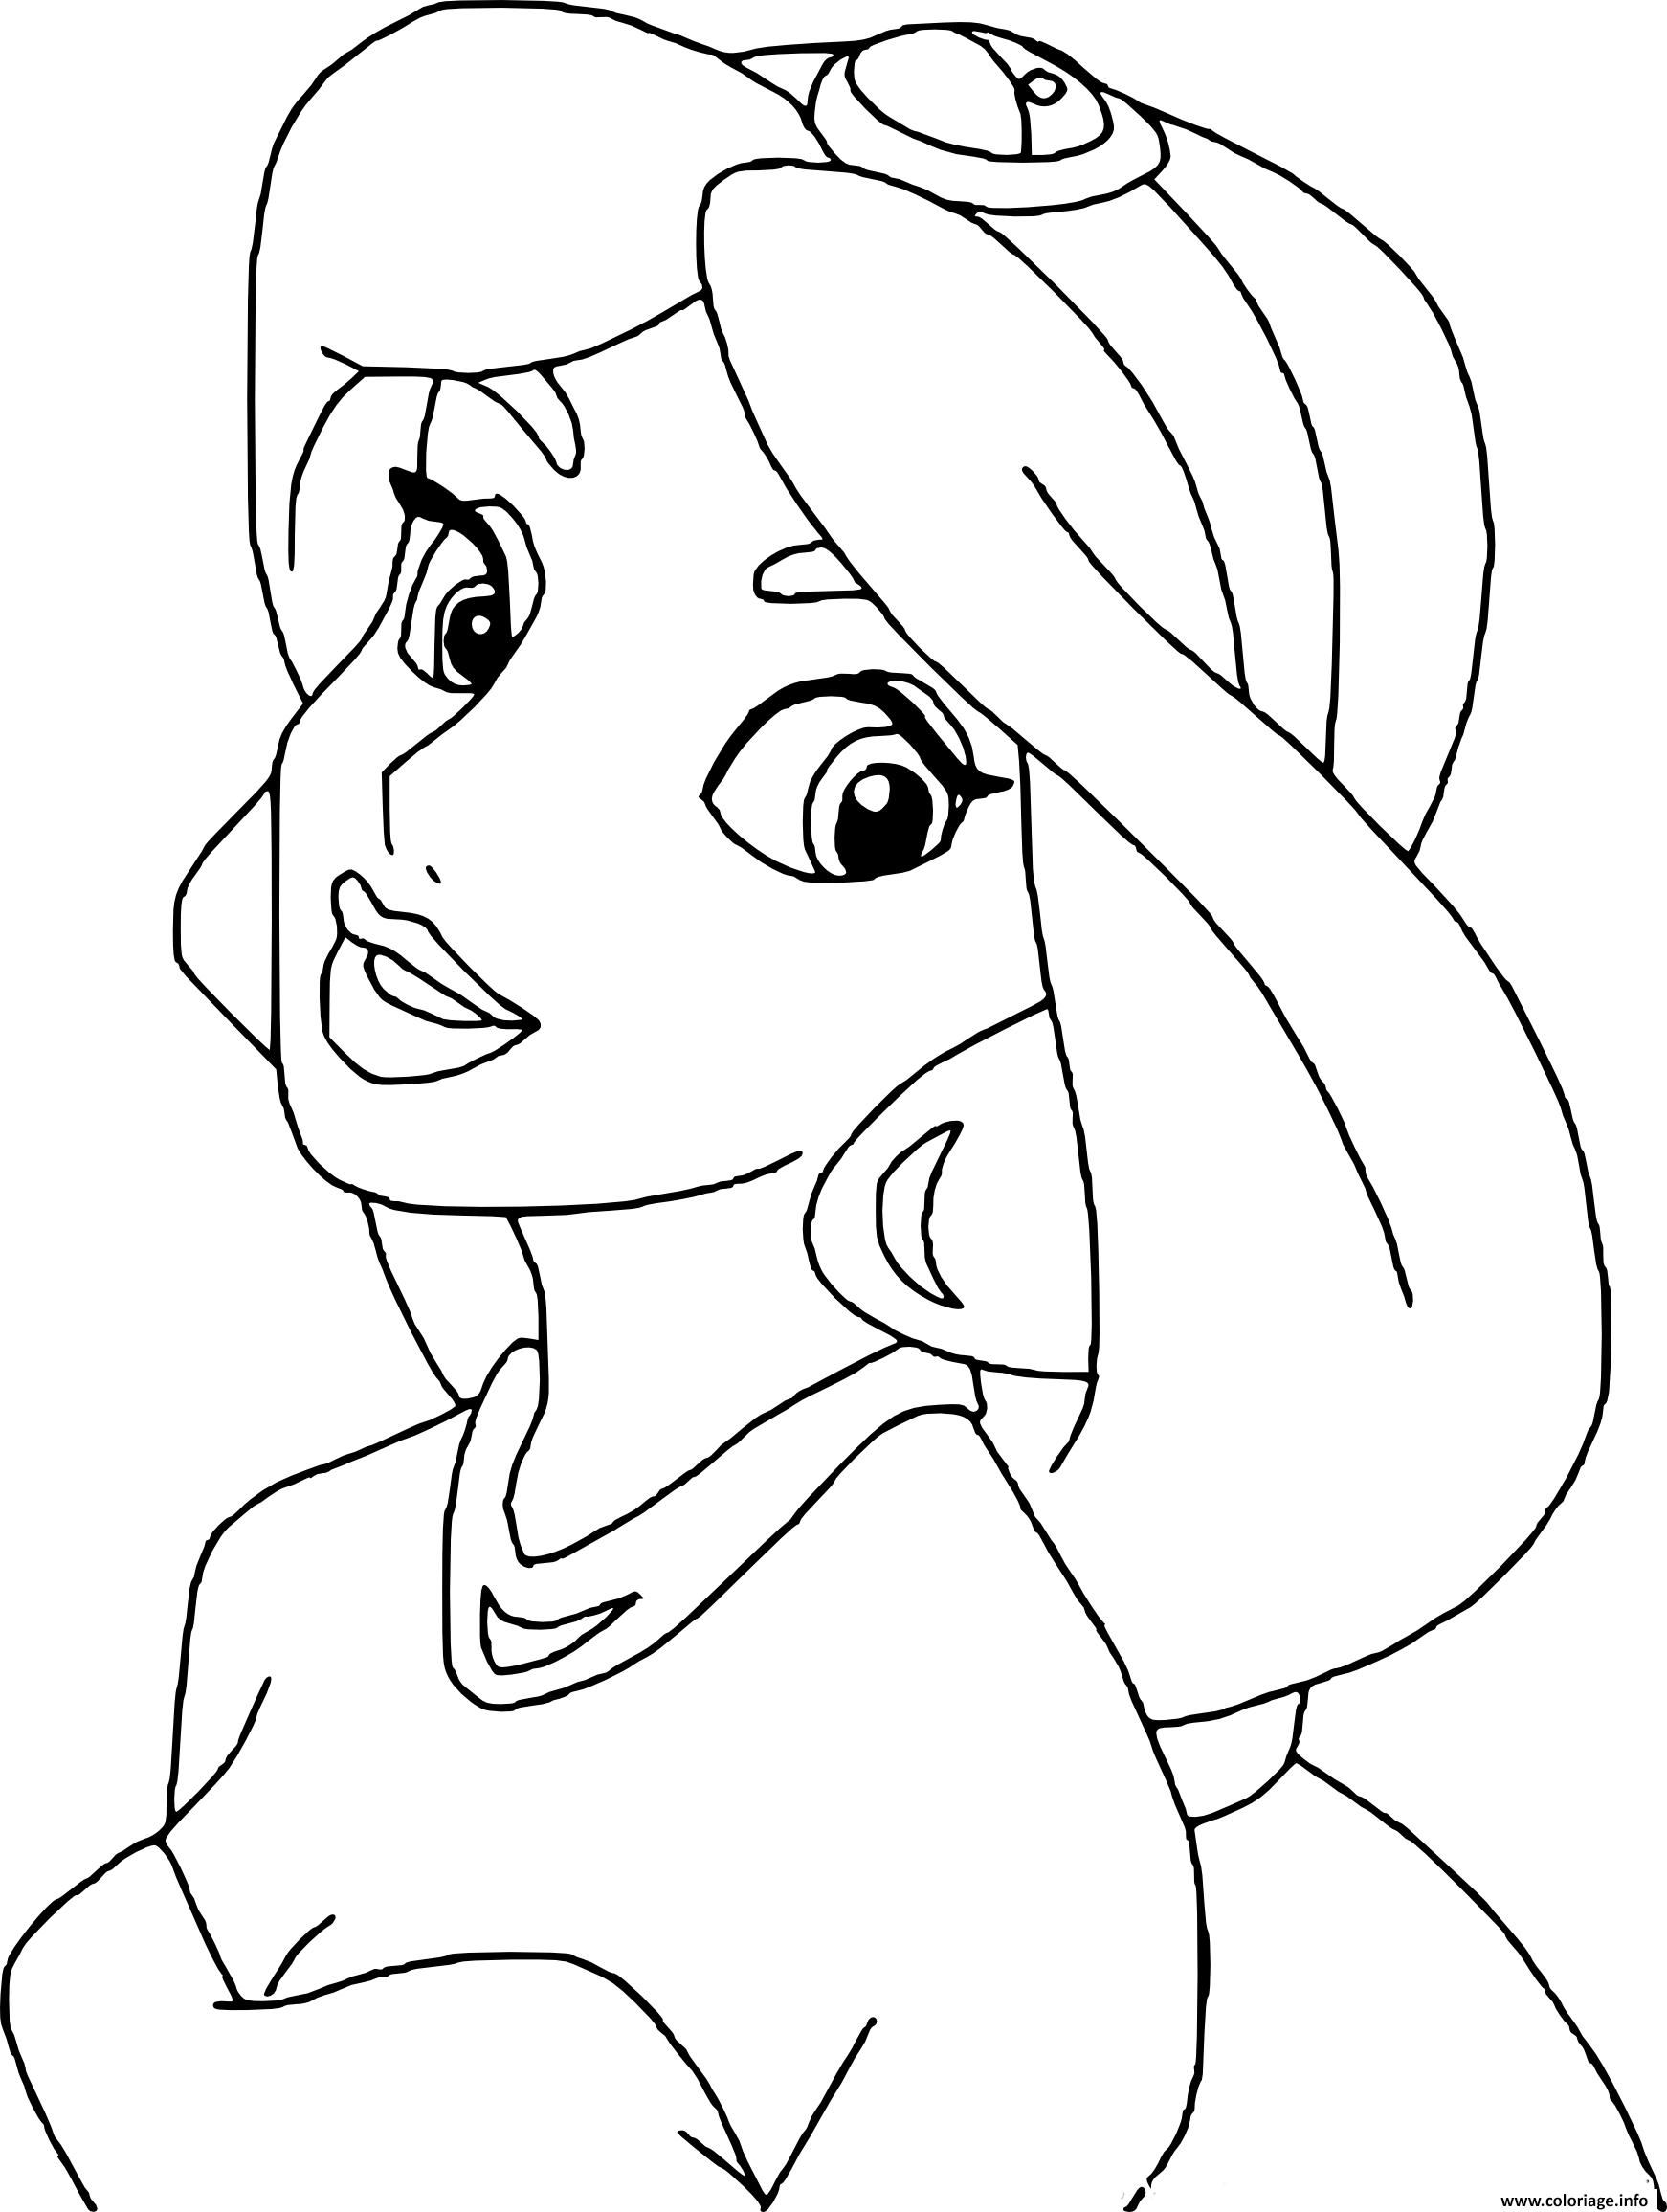 Coloriage Princesse Disney Jasmine Dessin Princesse Disney à imprimer